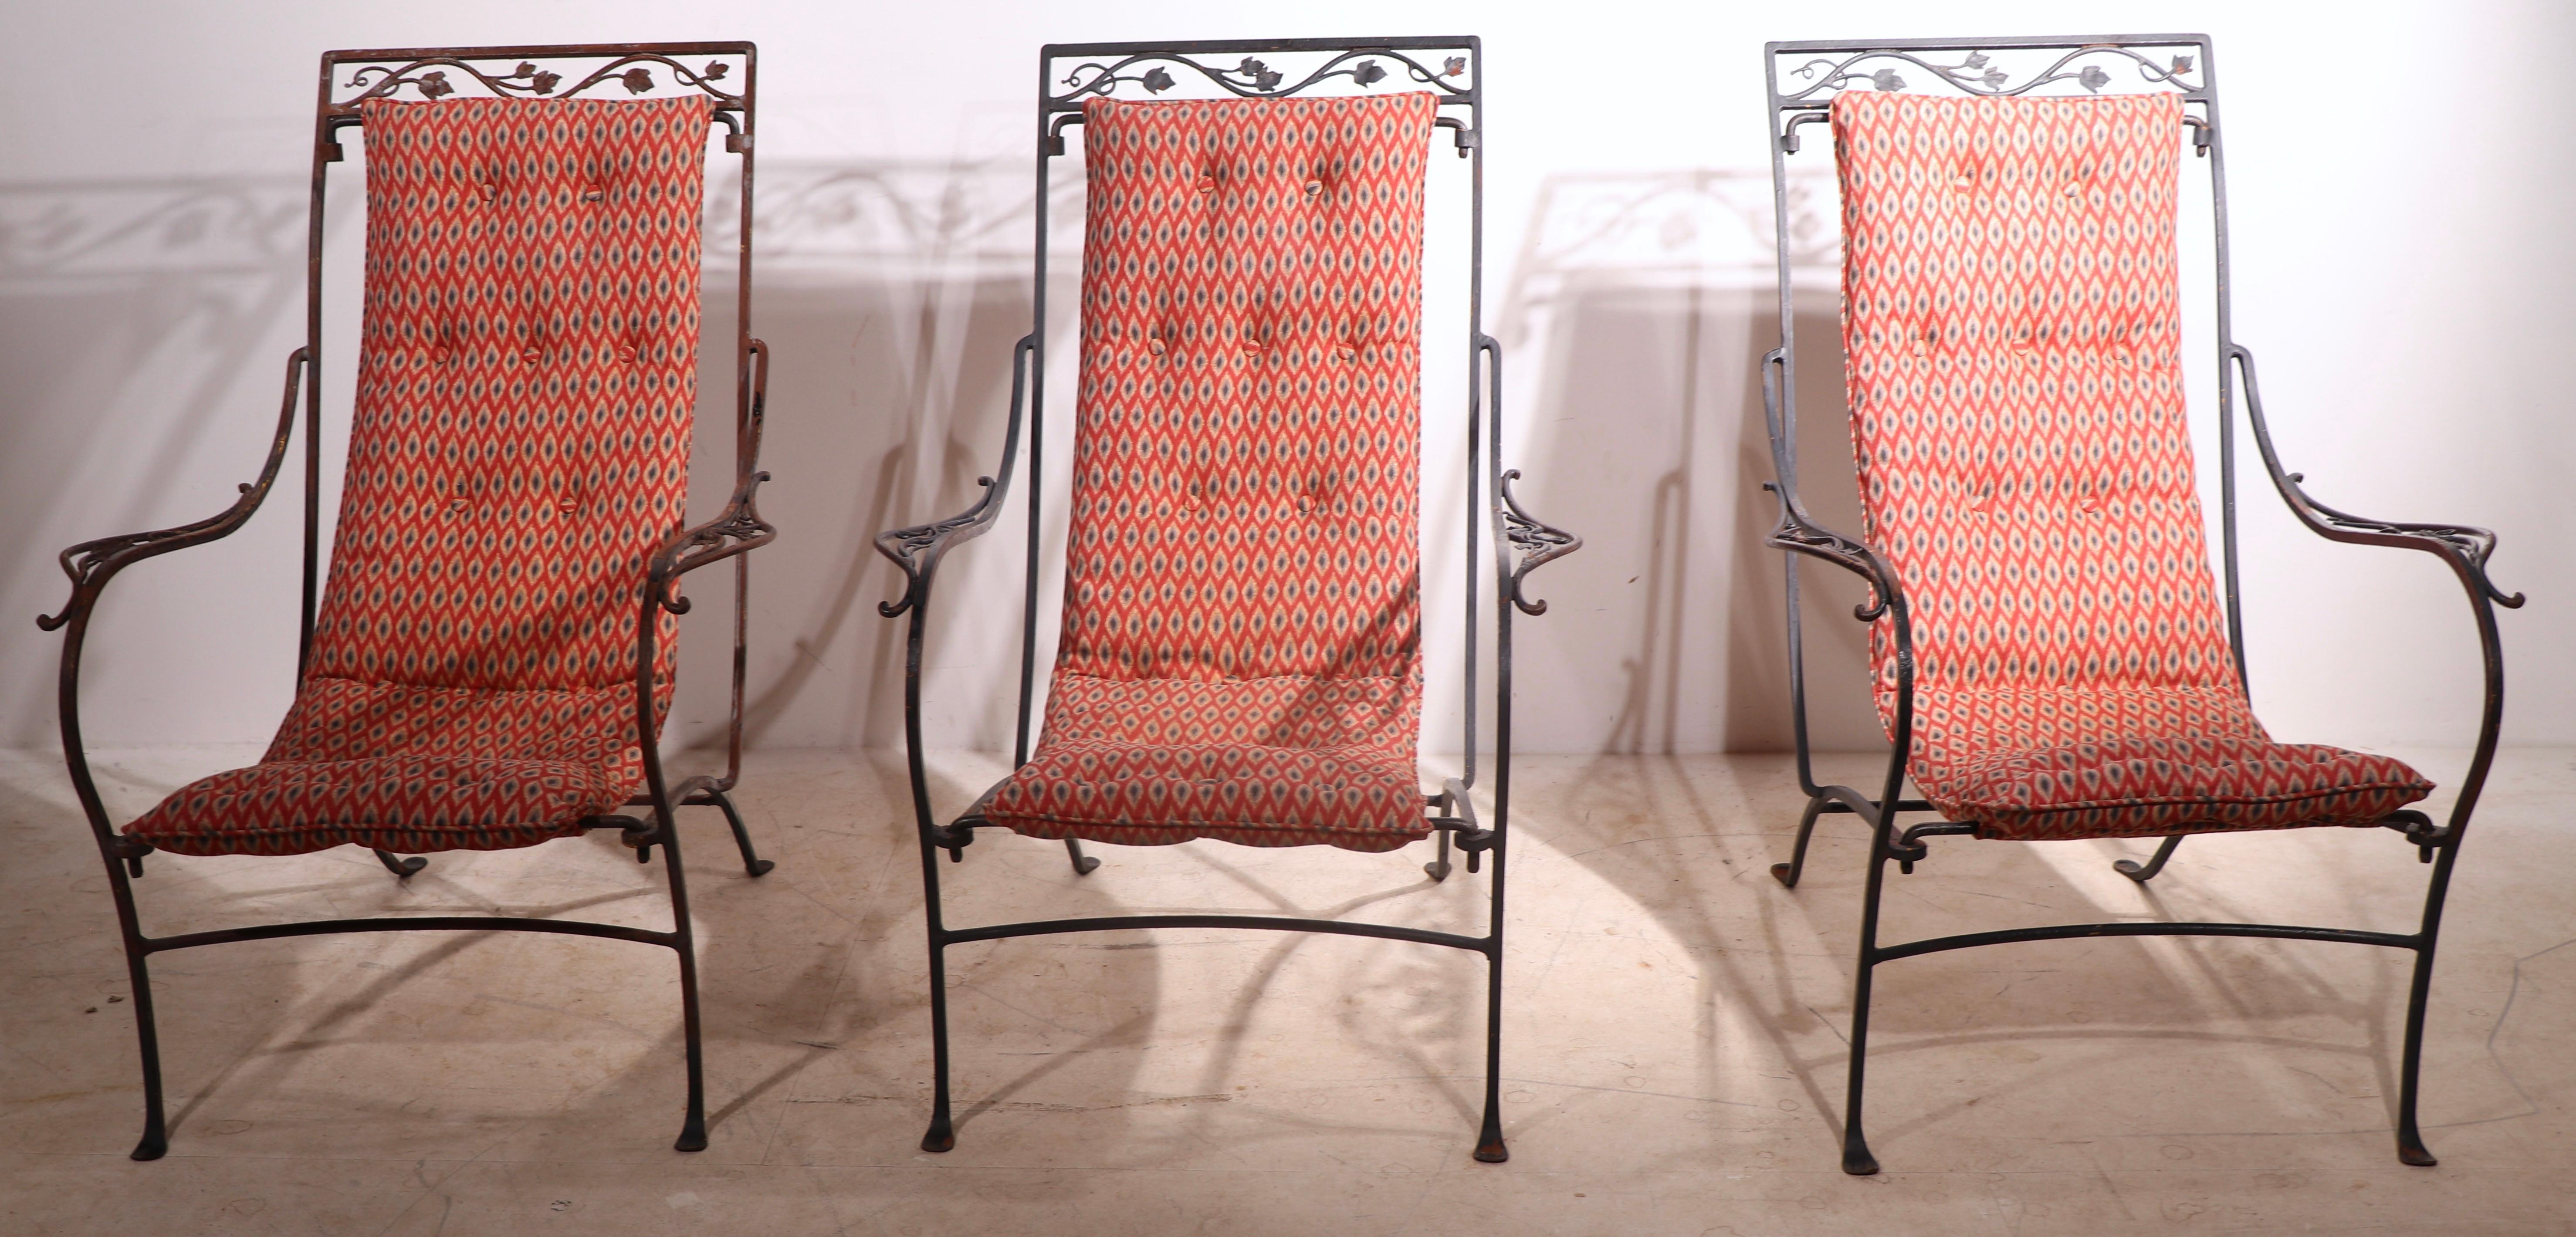 Ensemble de trois chaises longues à élingue du célèbre fabricant de mobilier de jardin Salterini. Les chaises sont dotées d'un dossier continu suspendu et rembourré, d'une assise en tissu original à motif de diamants, sur des cadres exquis